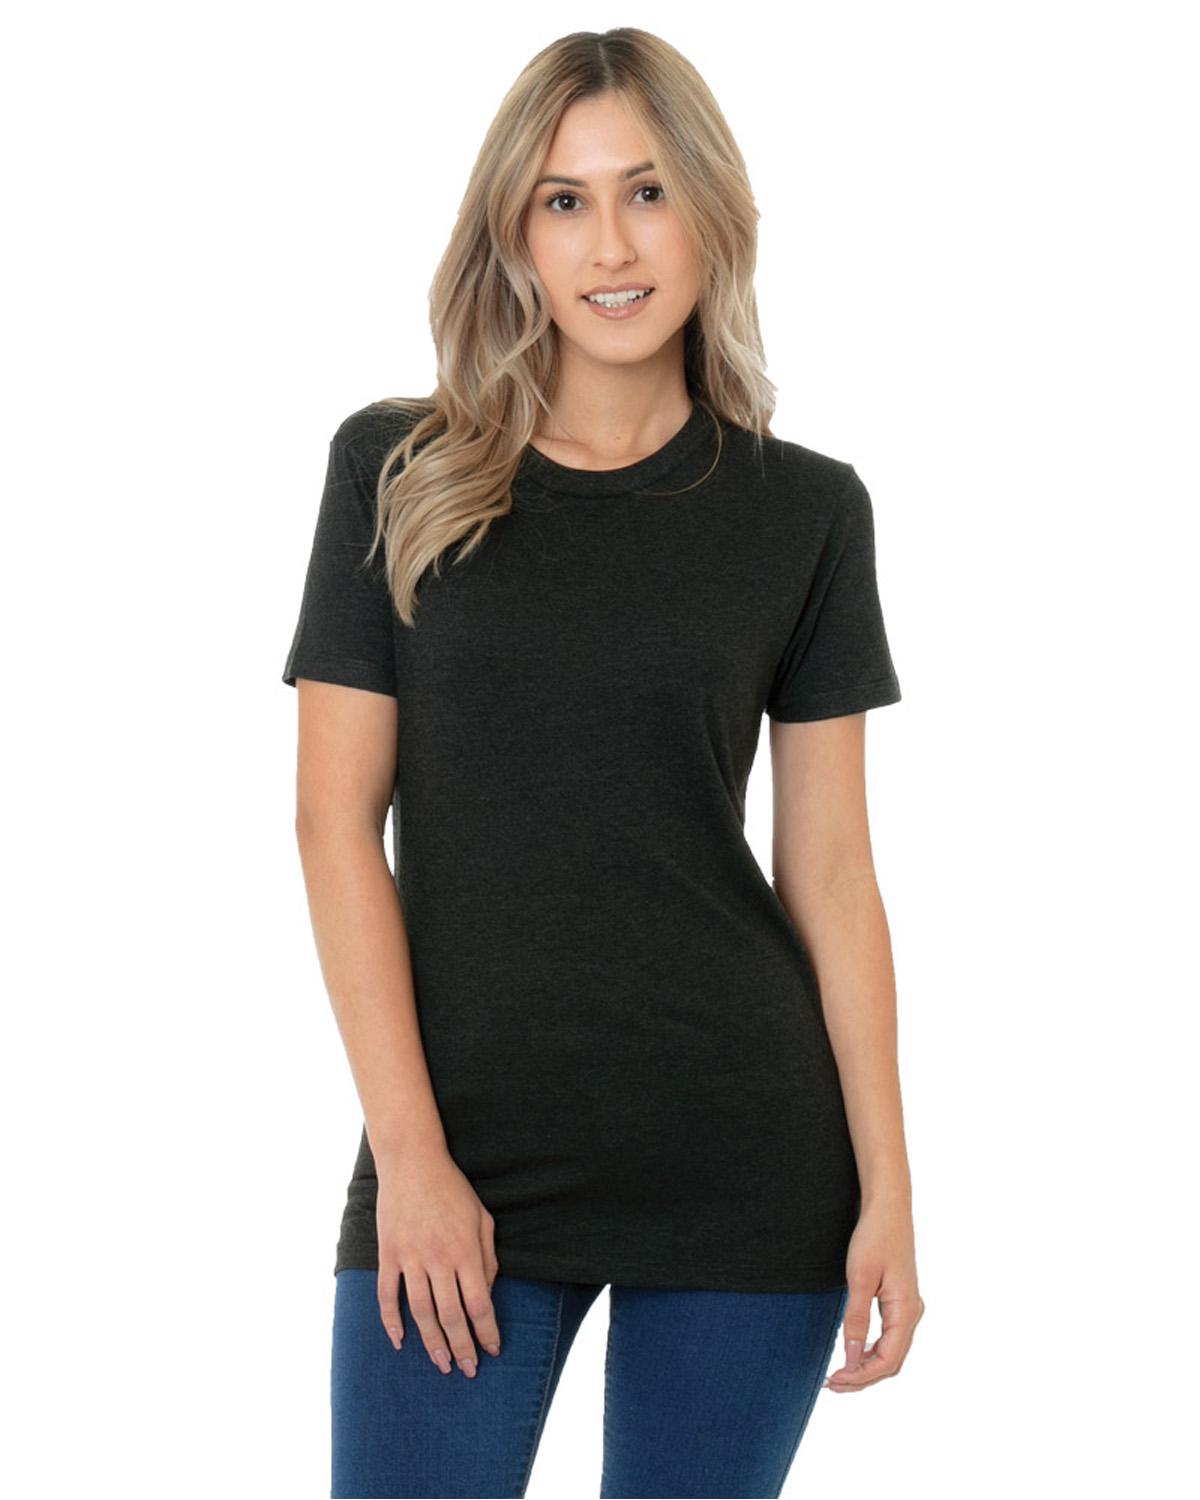 Bayside BA5810 Ladies Triblend T-Shirt - Shirtmax